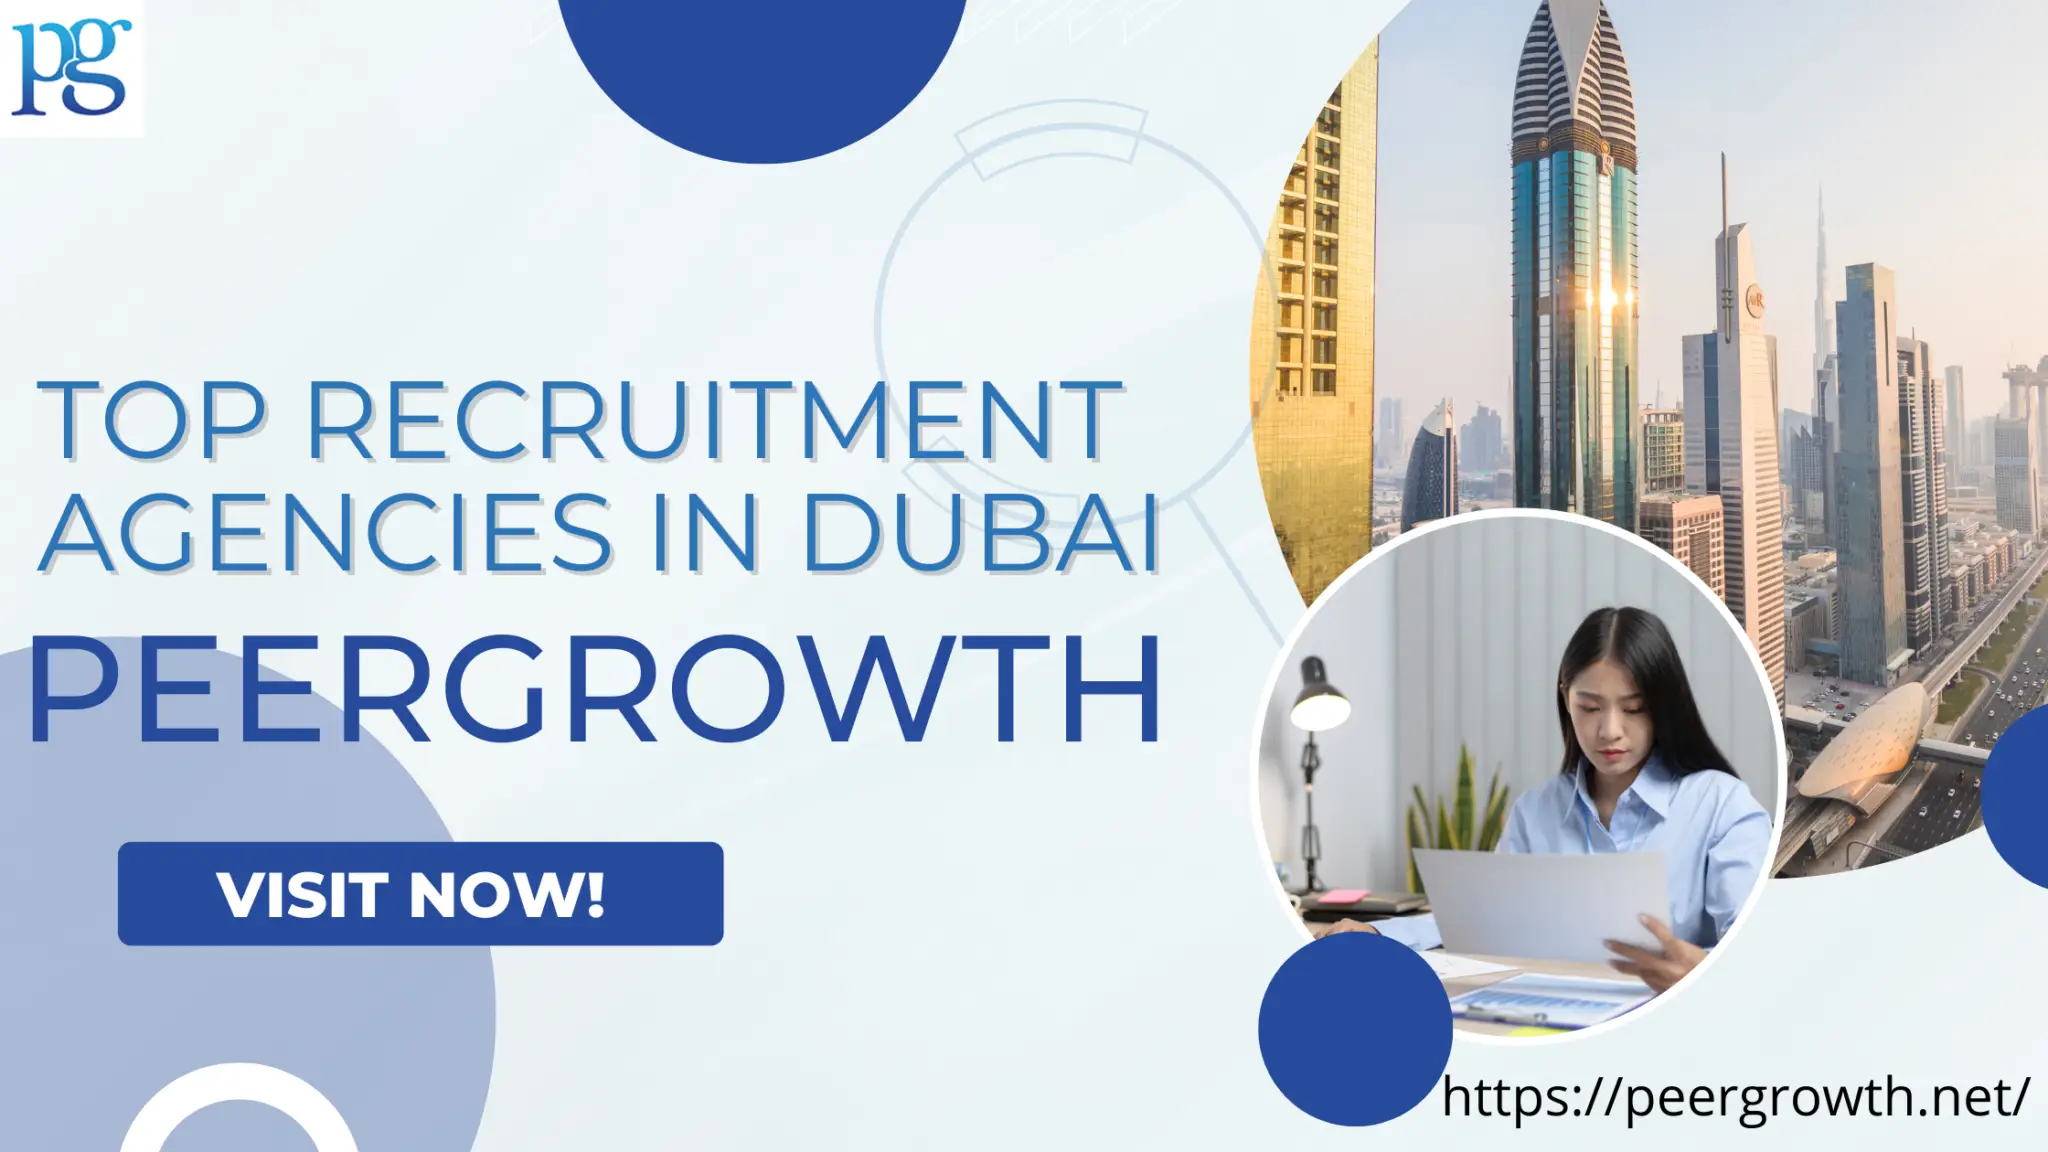 Top Recruitment Agencies in Dubai- PeerGrowth